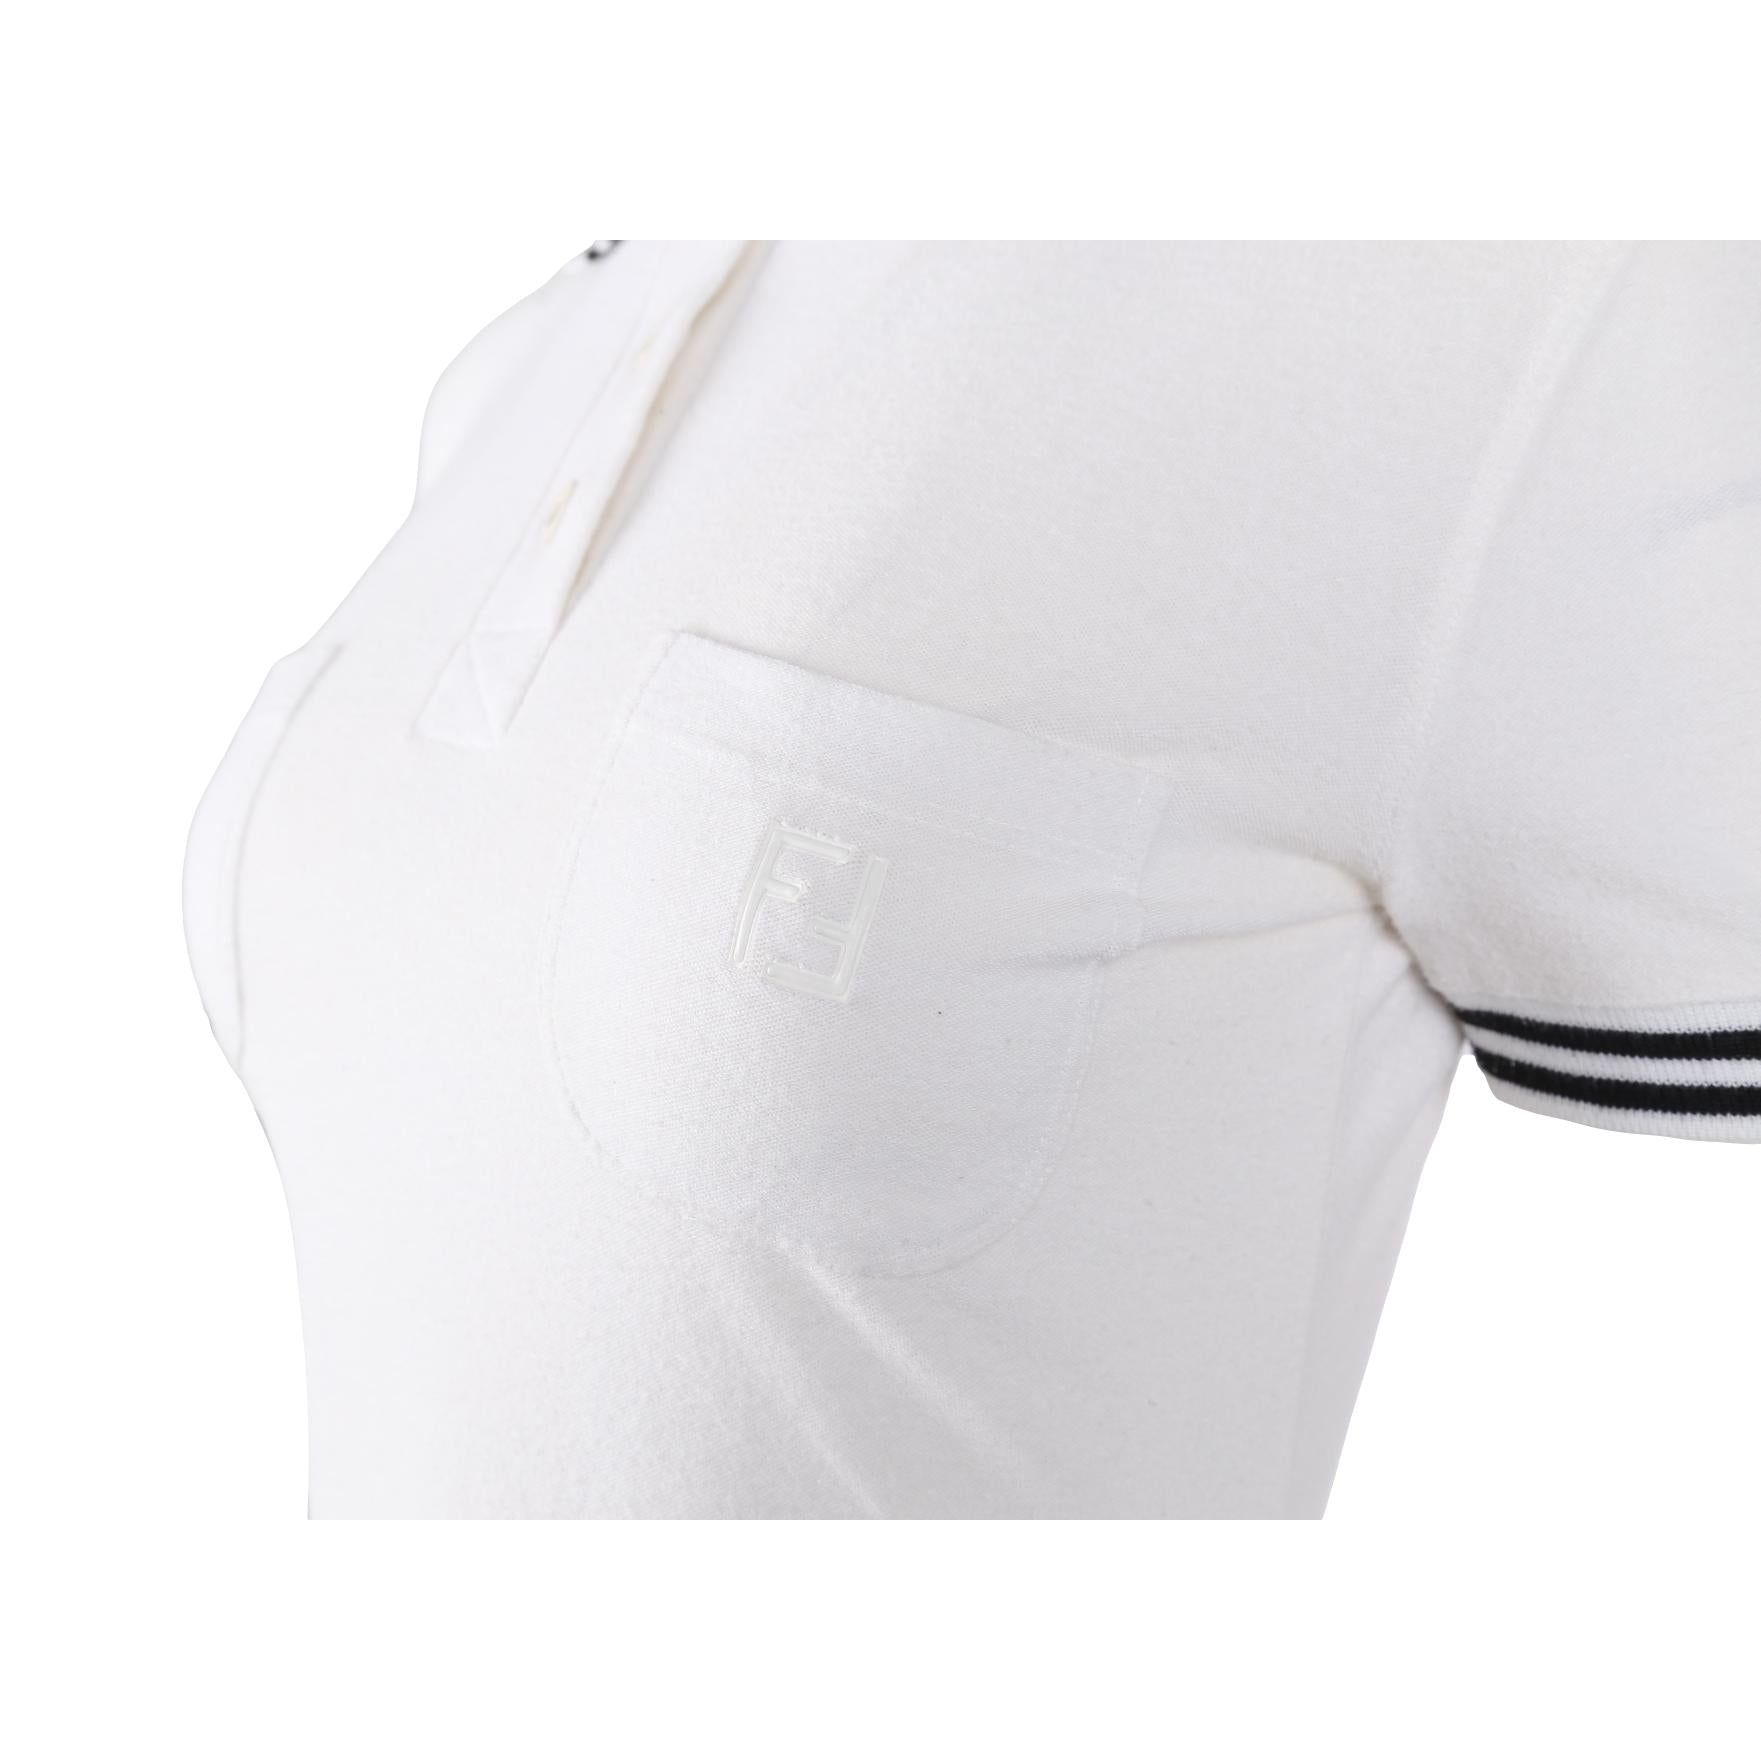 Fendi White Logo Polo Dress - Apparel